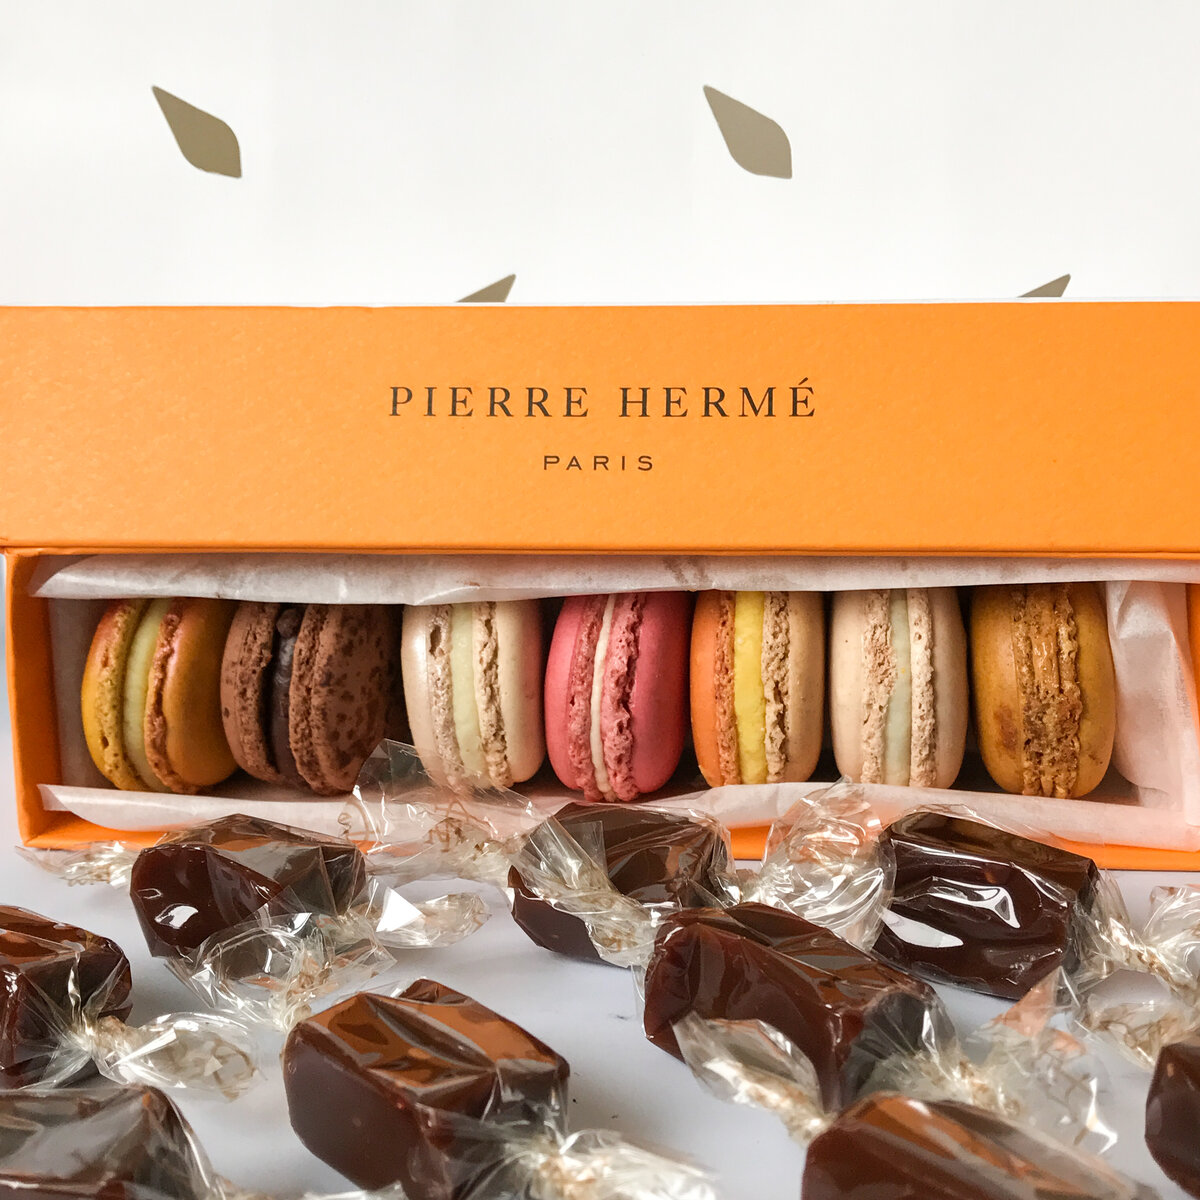 Кондитерская Пьера Эрме со знаменитыми макаронс входит в обязательный список к посещению в Париже. Потому что Пьер Эрме был признан «Лучшим кондитером мира» 2016 года.